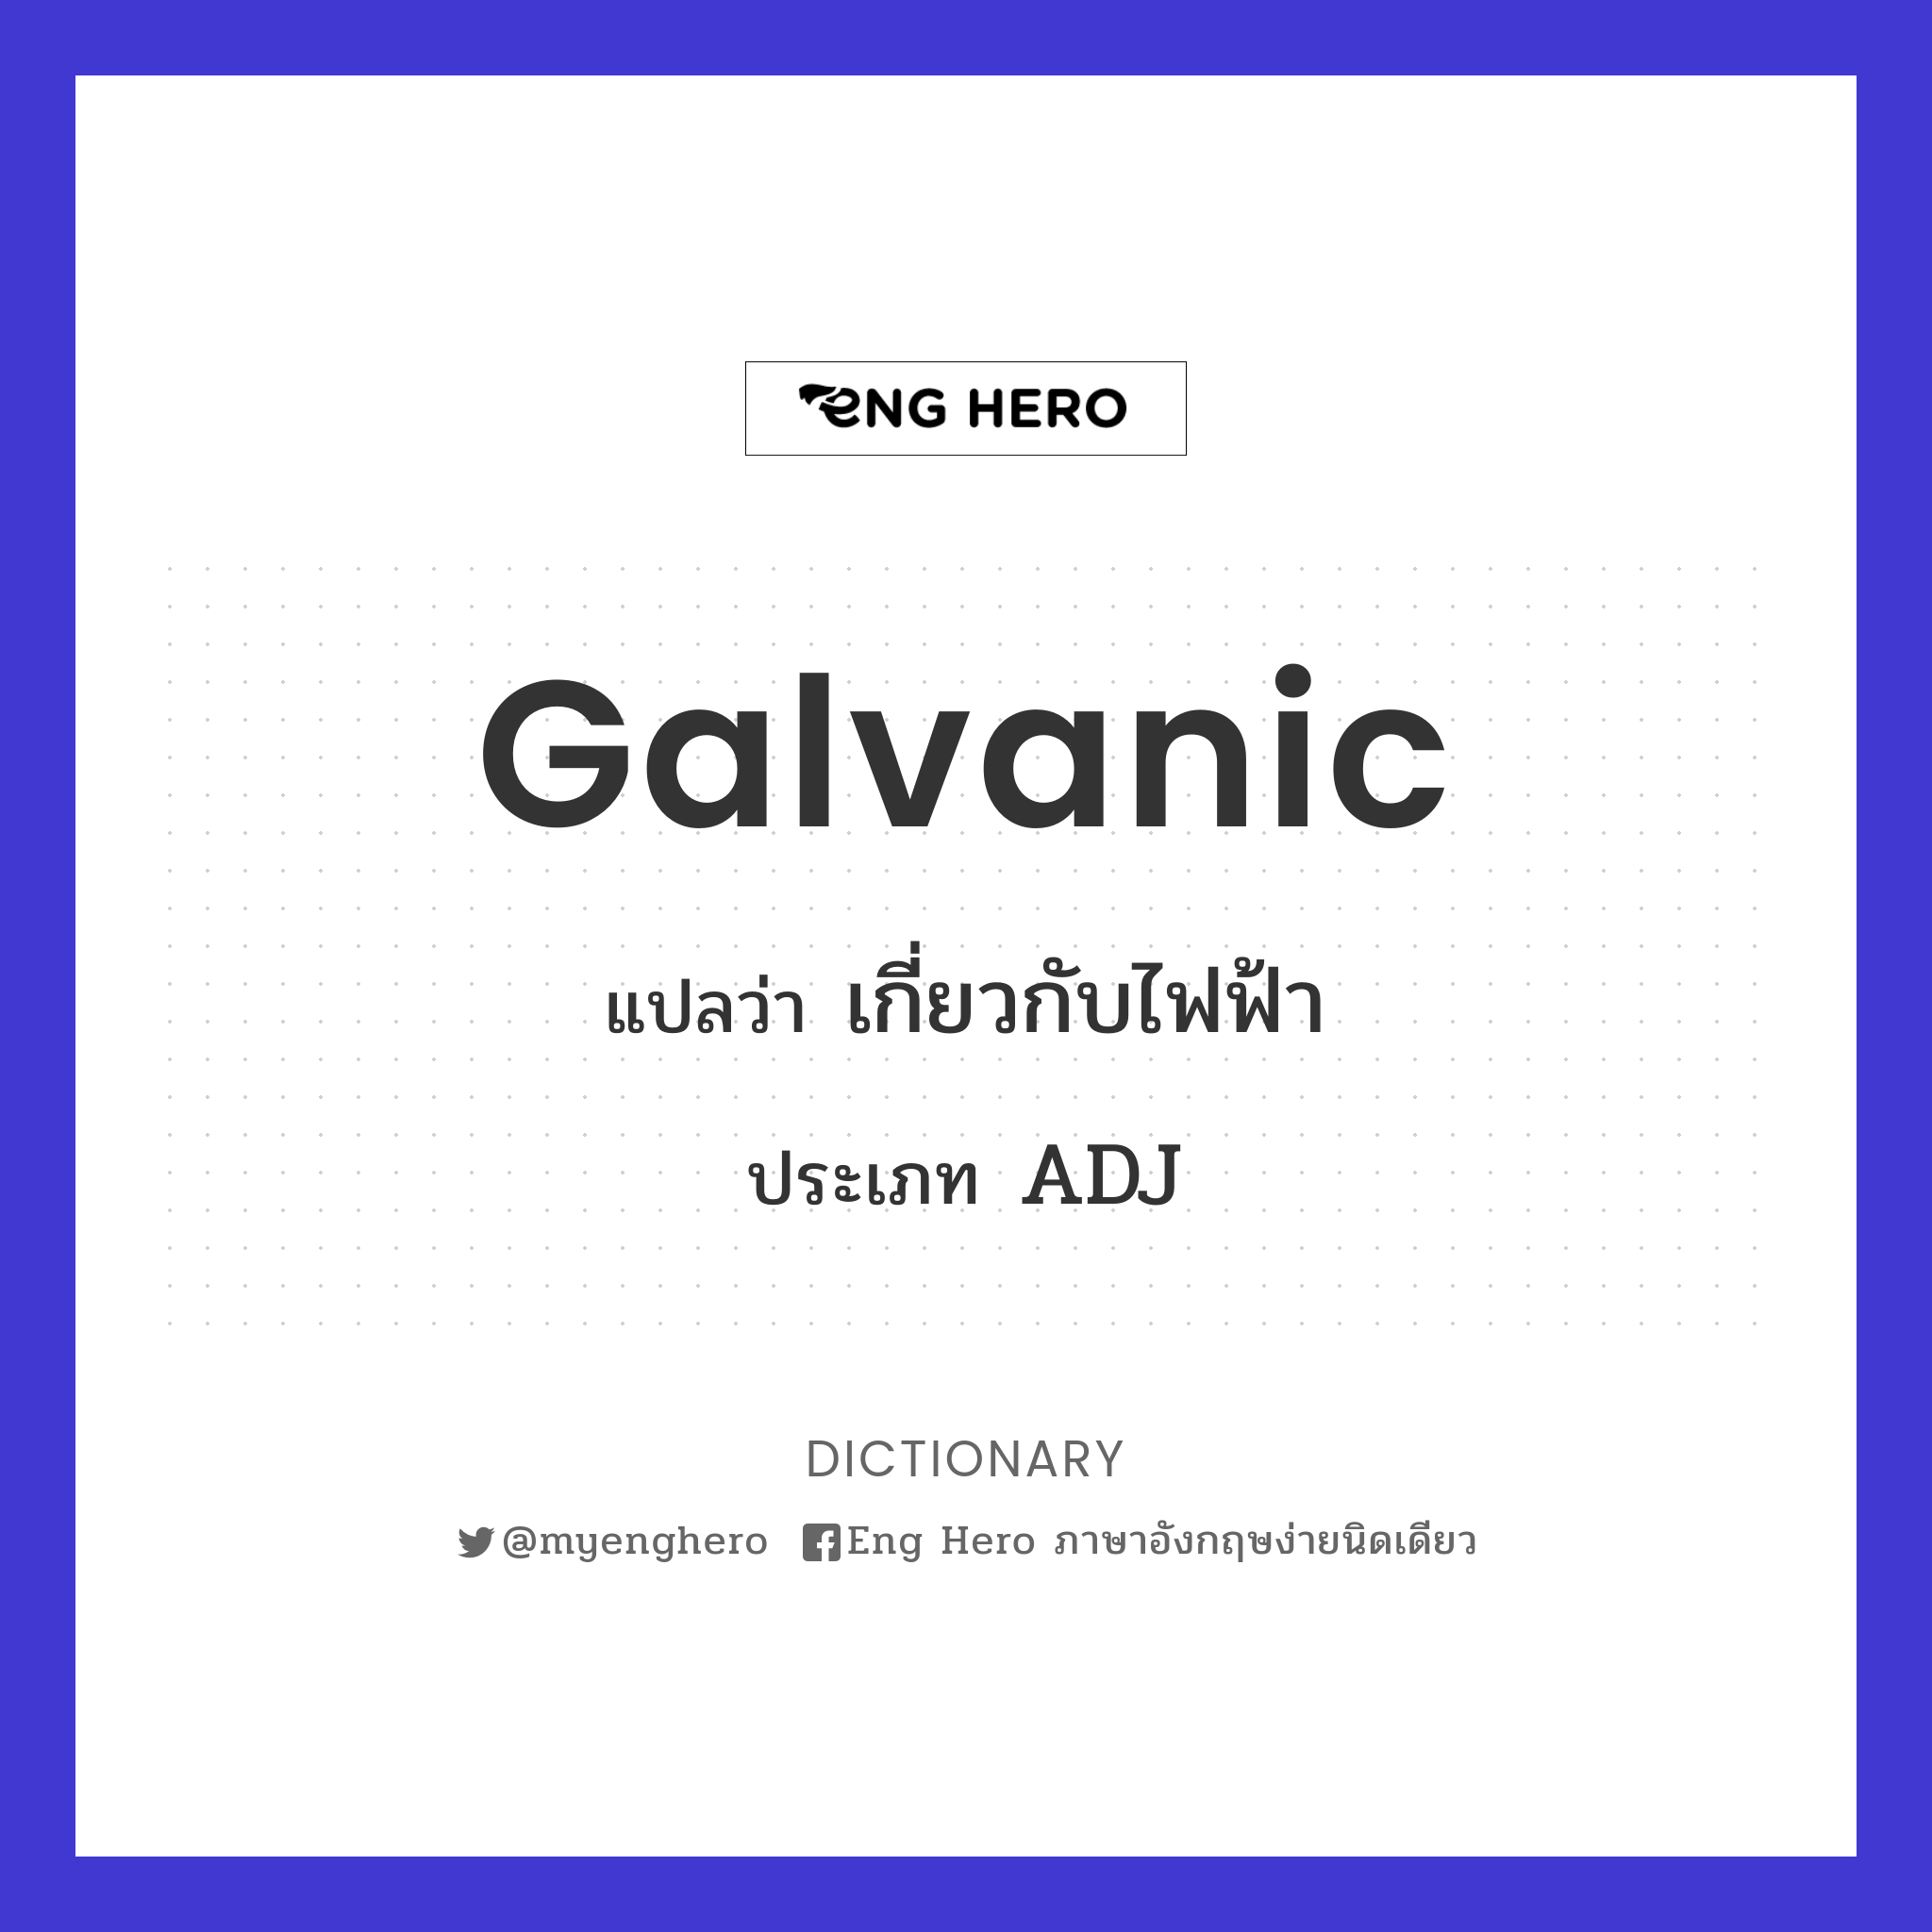 galvanic